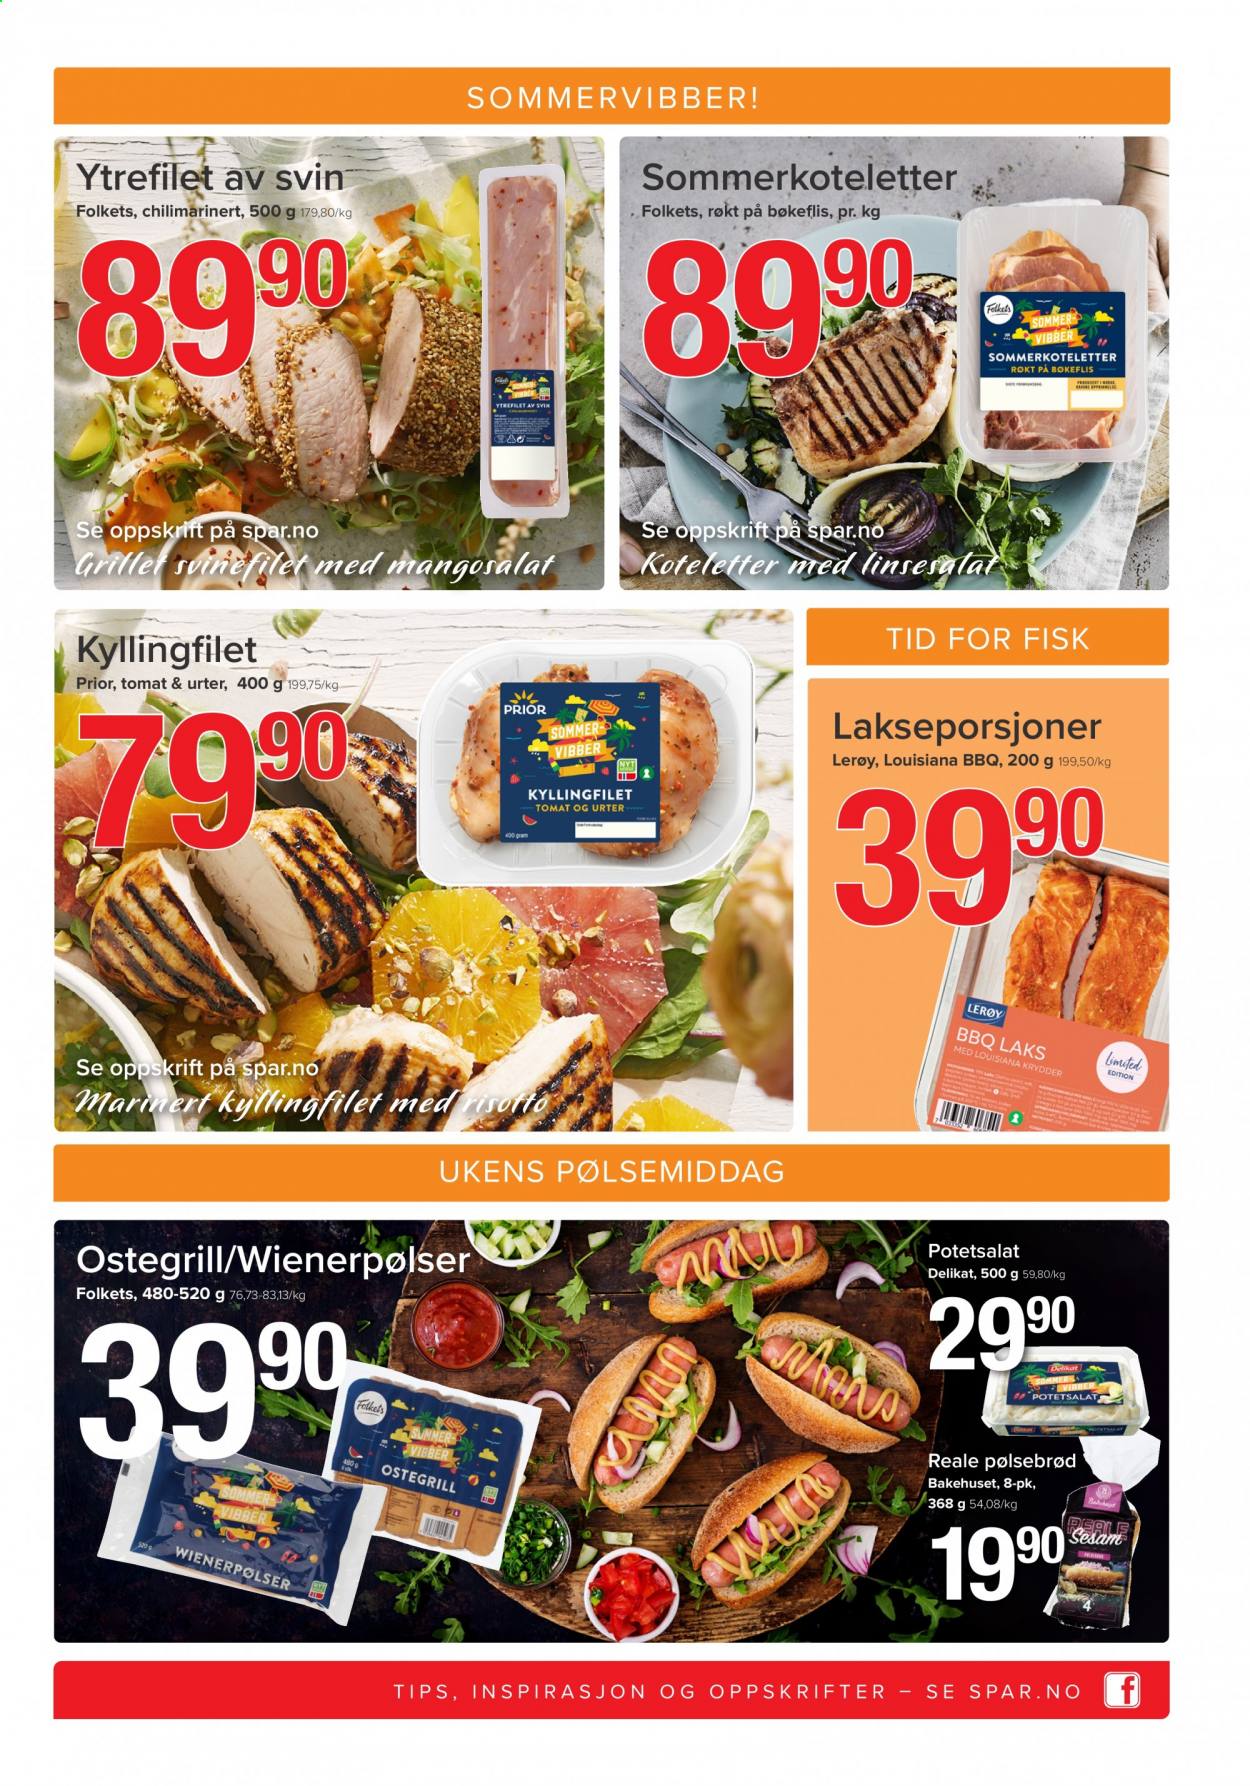 thumbnail - Kundeavis SPAR - 28.6.2021 - 4.7.2021 - Produkter fra tilbudsaviser - kyllingfilet, kyllingkjøtt, ytrefilet, tomat, fisk, wienerpølse, potetsalat. Side 3.